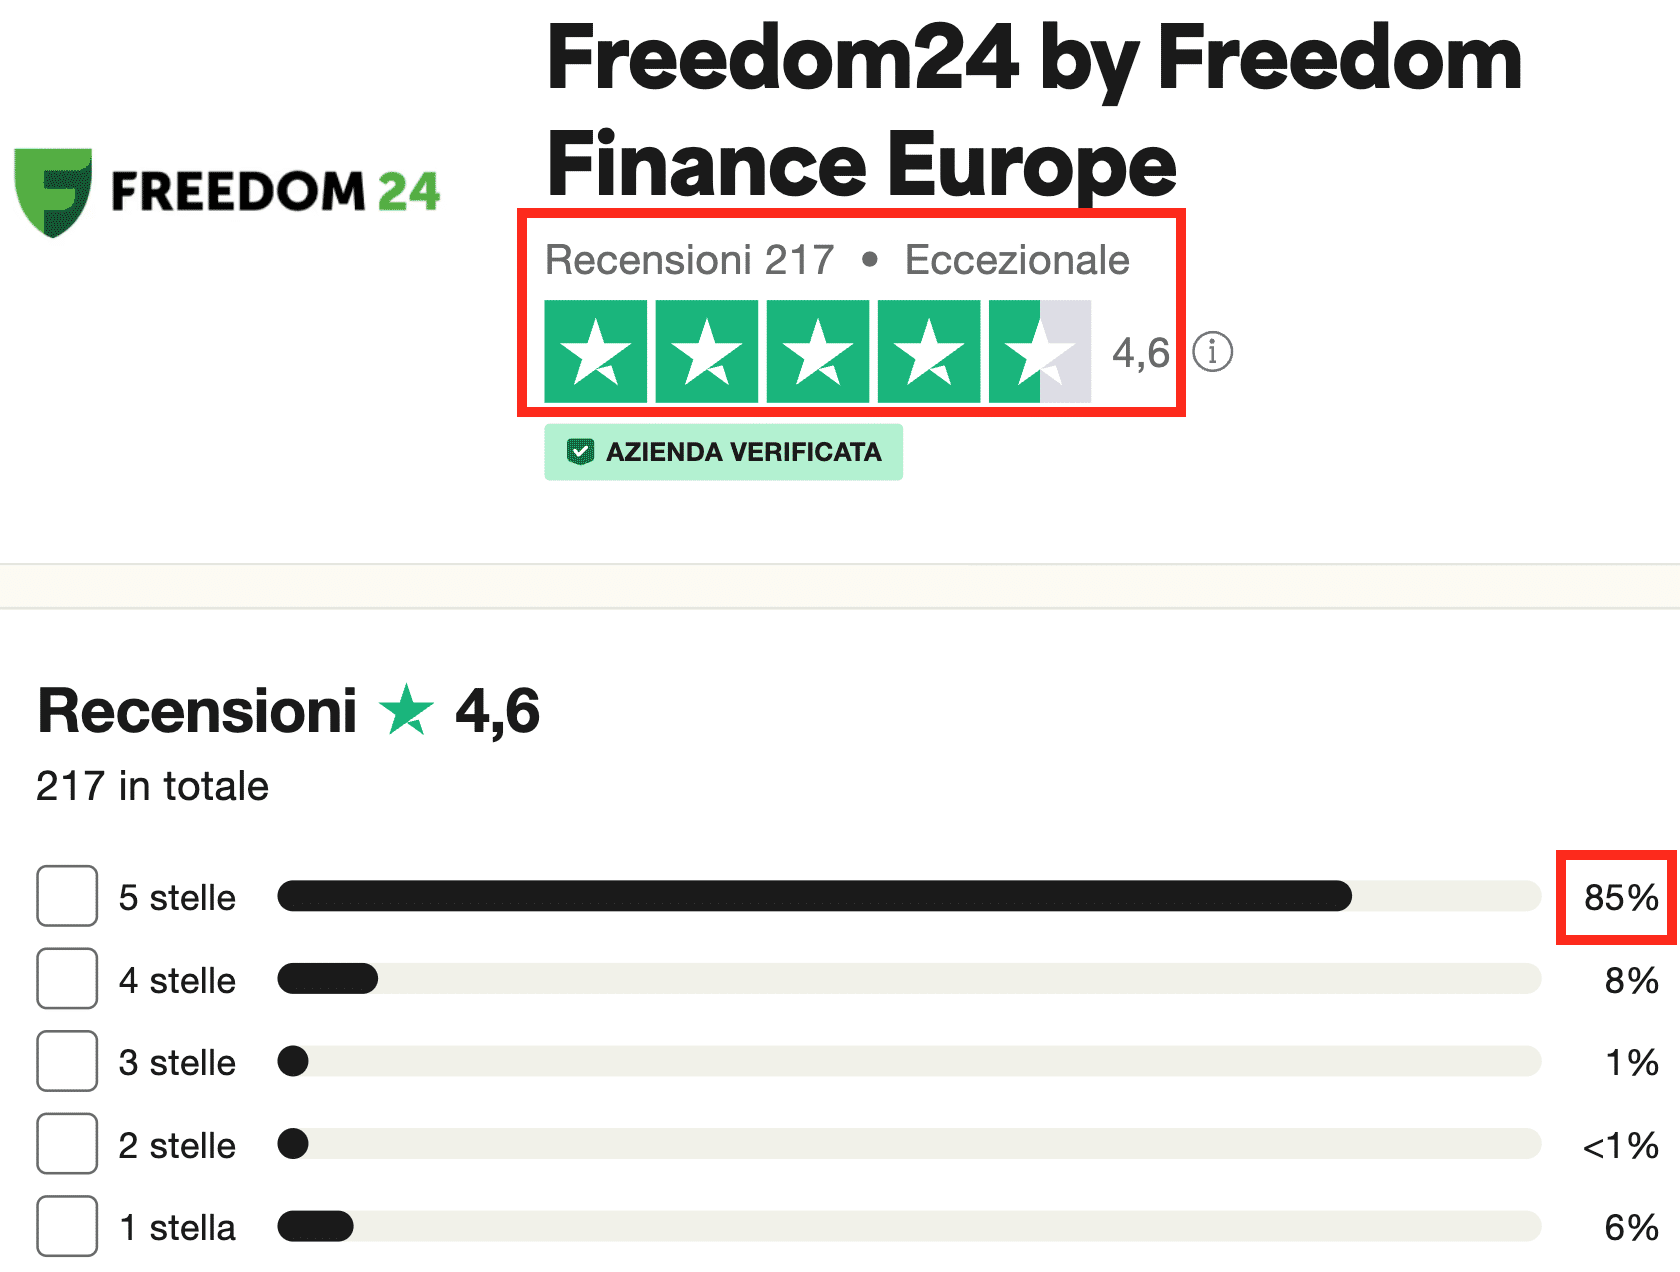 Freedom24 ha altissime recensioni positive di clienti soddisfatti